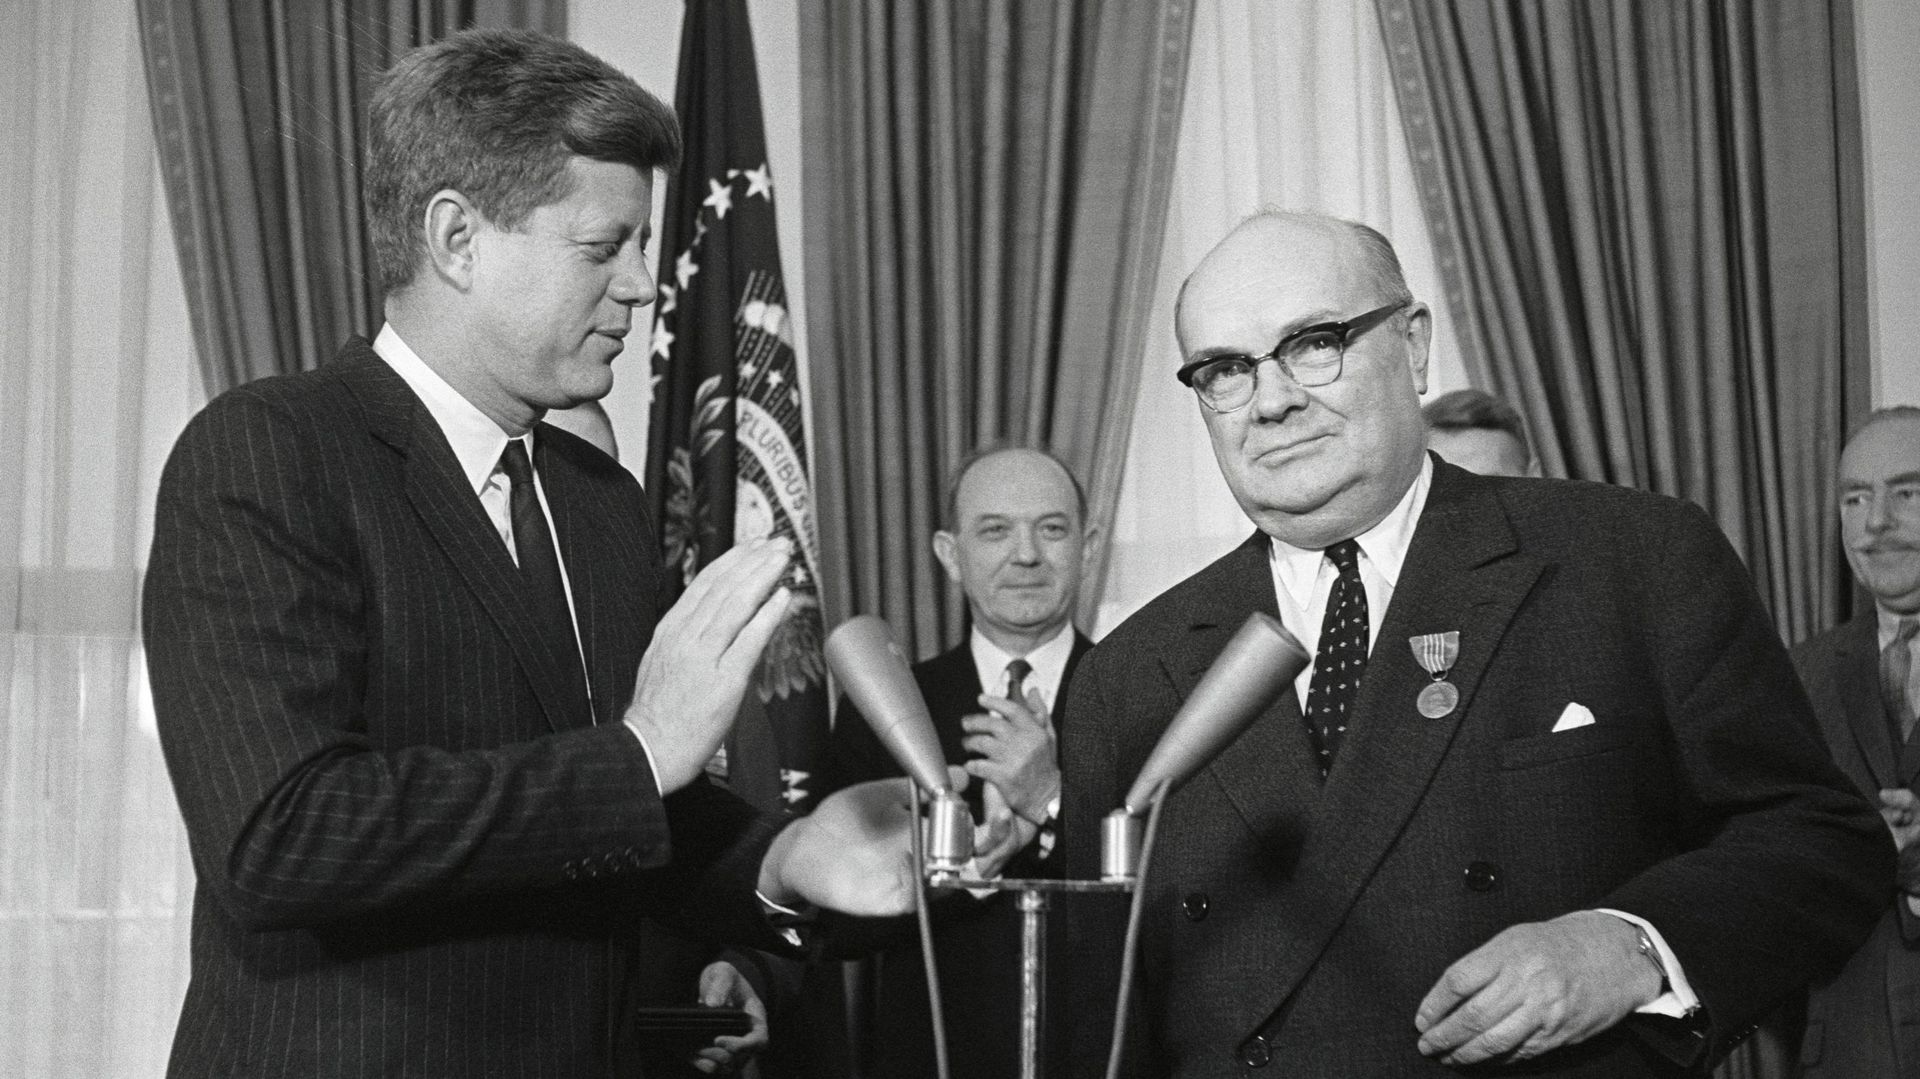 En sa qualité de Secrétaire général de l’OTAN, Paul-Henri Spaak reçoit la « Médaille de la Paix » de mains de John Kennedy en 1961, à la Maion Blanche. GettyImage